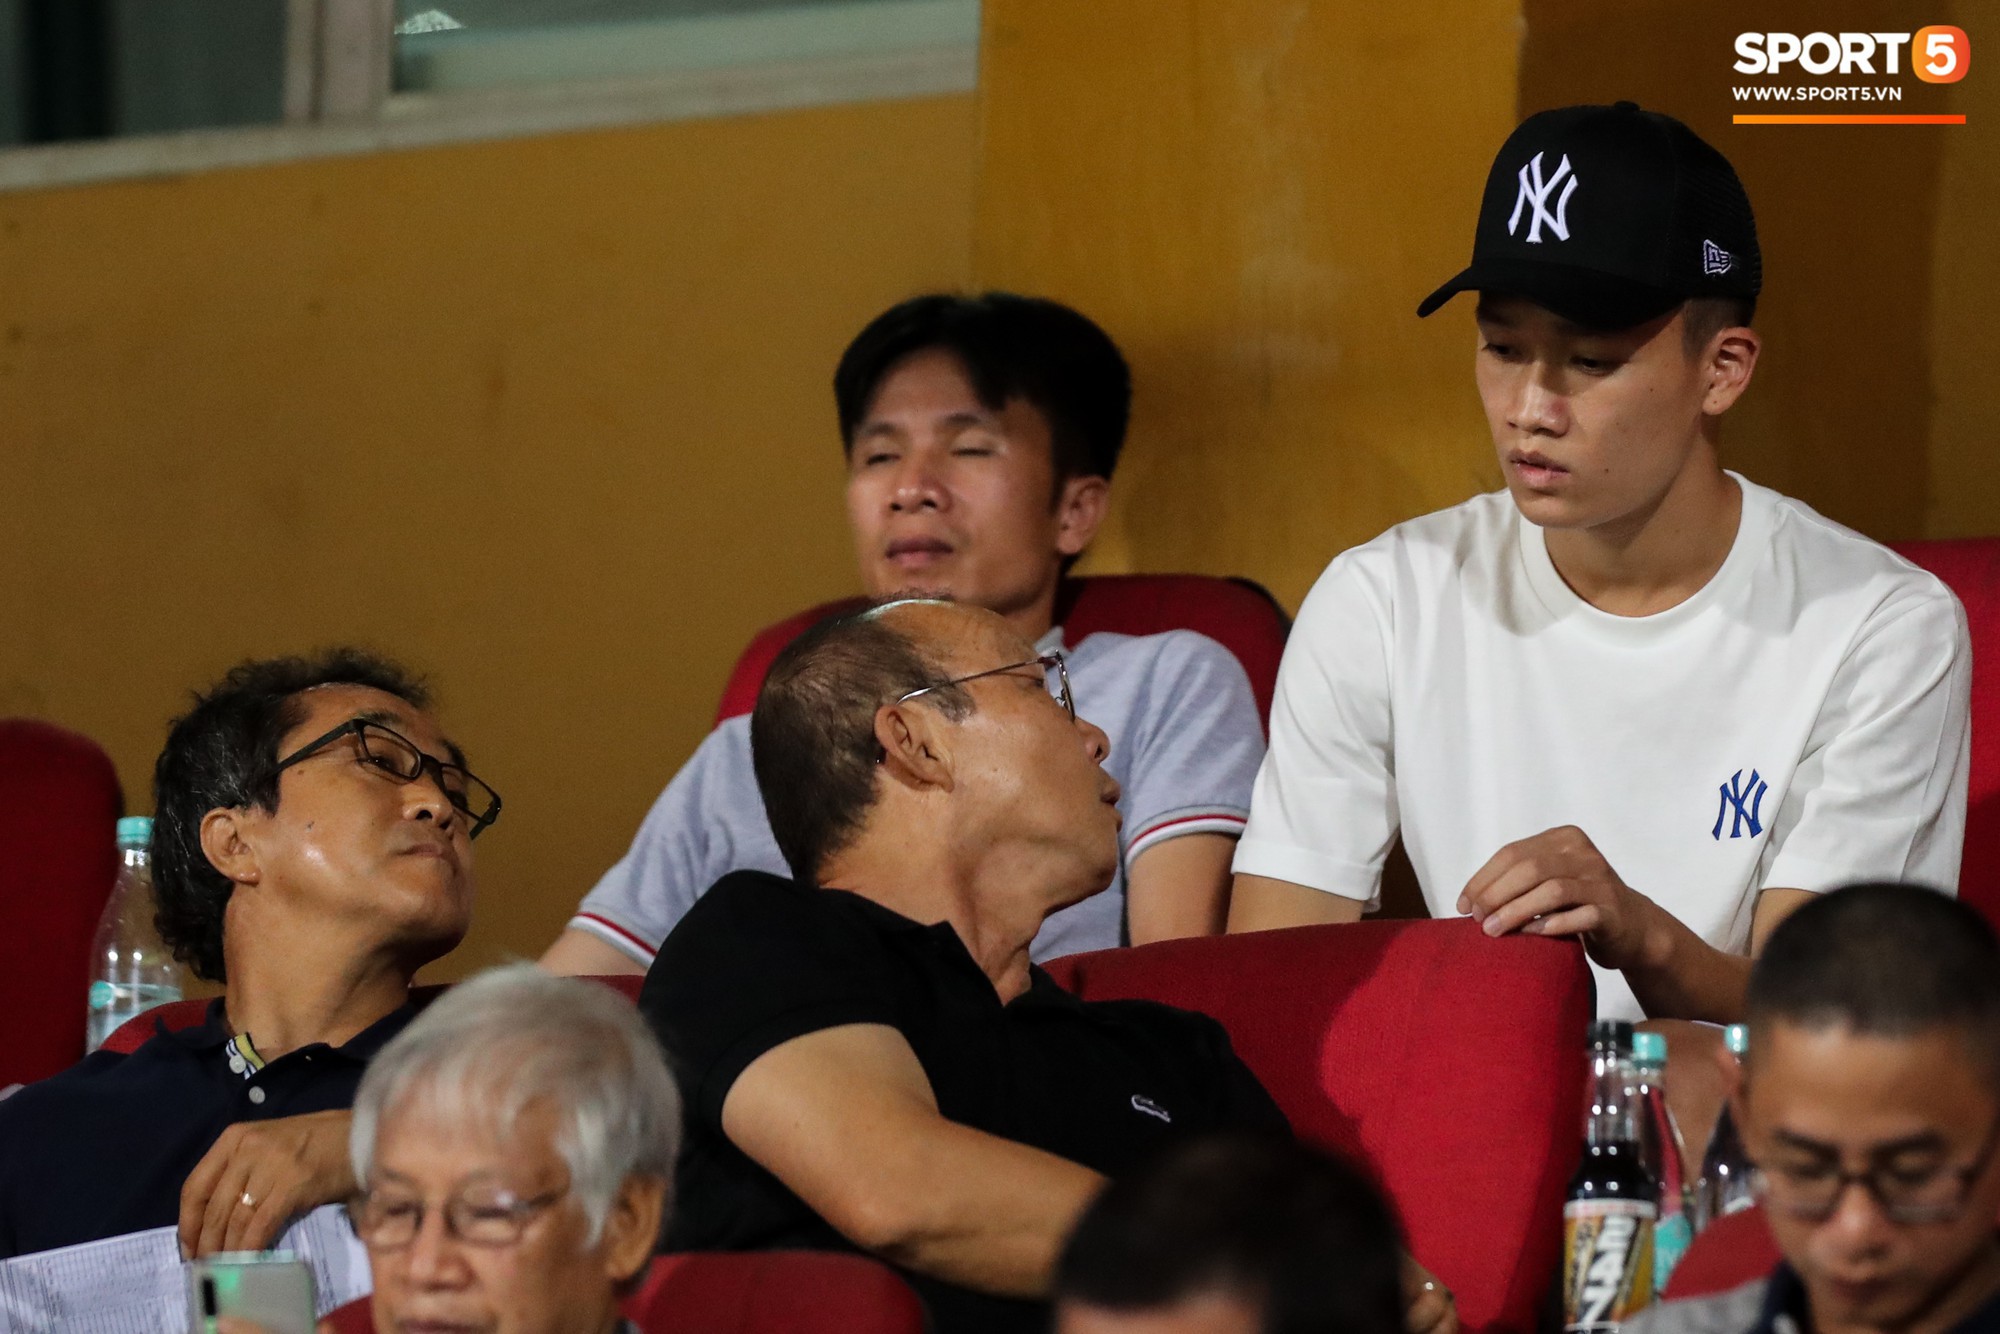 Thầy Park đầy suy tư khi chứng kiến Hải Quế, Tiến Dũng để thủng lưới tới 3 bàn trong trận đấu với Quảng Ninh - Ảnh 10.